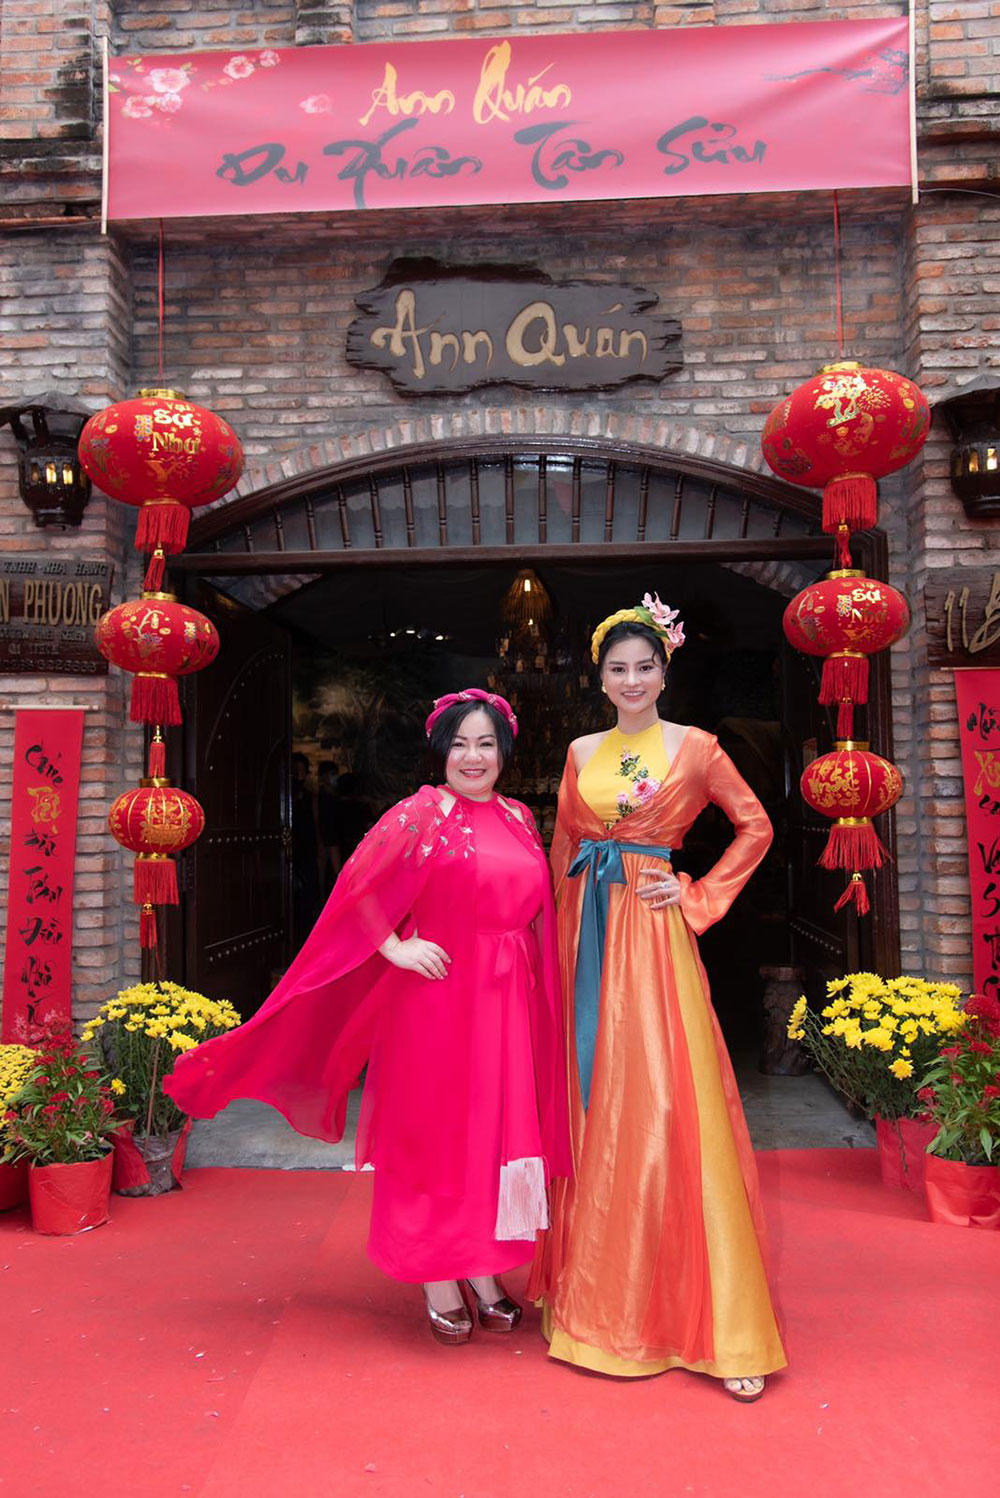 Chị Trang Lê và siêu mẫu Vũ Thu Phương chào mời khác đến buổi tiệc Tết Celebration 2021 tại Ann Quán